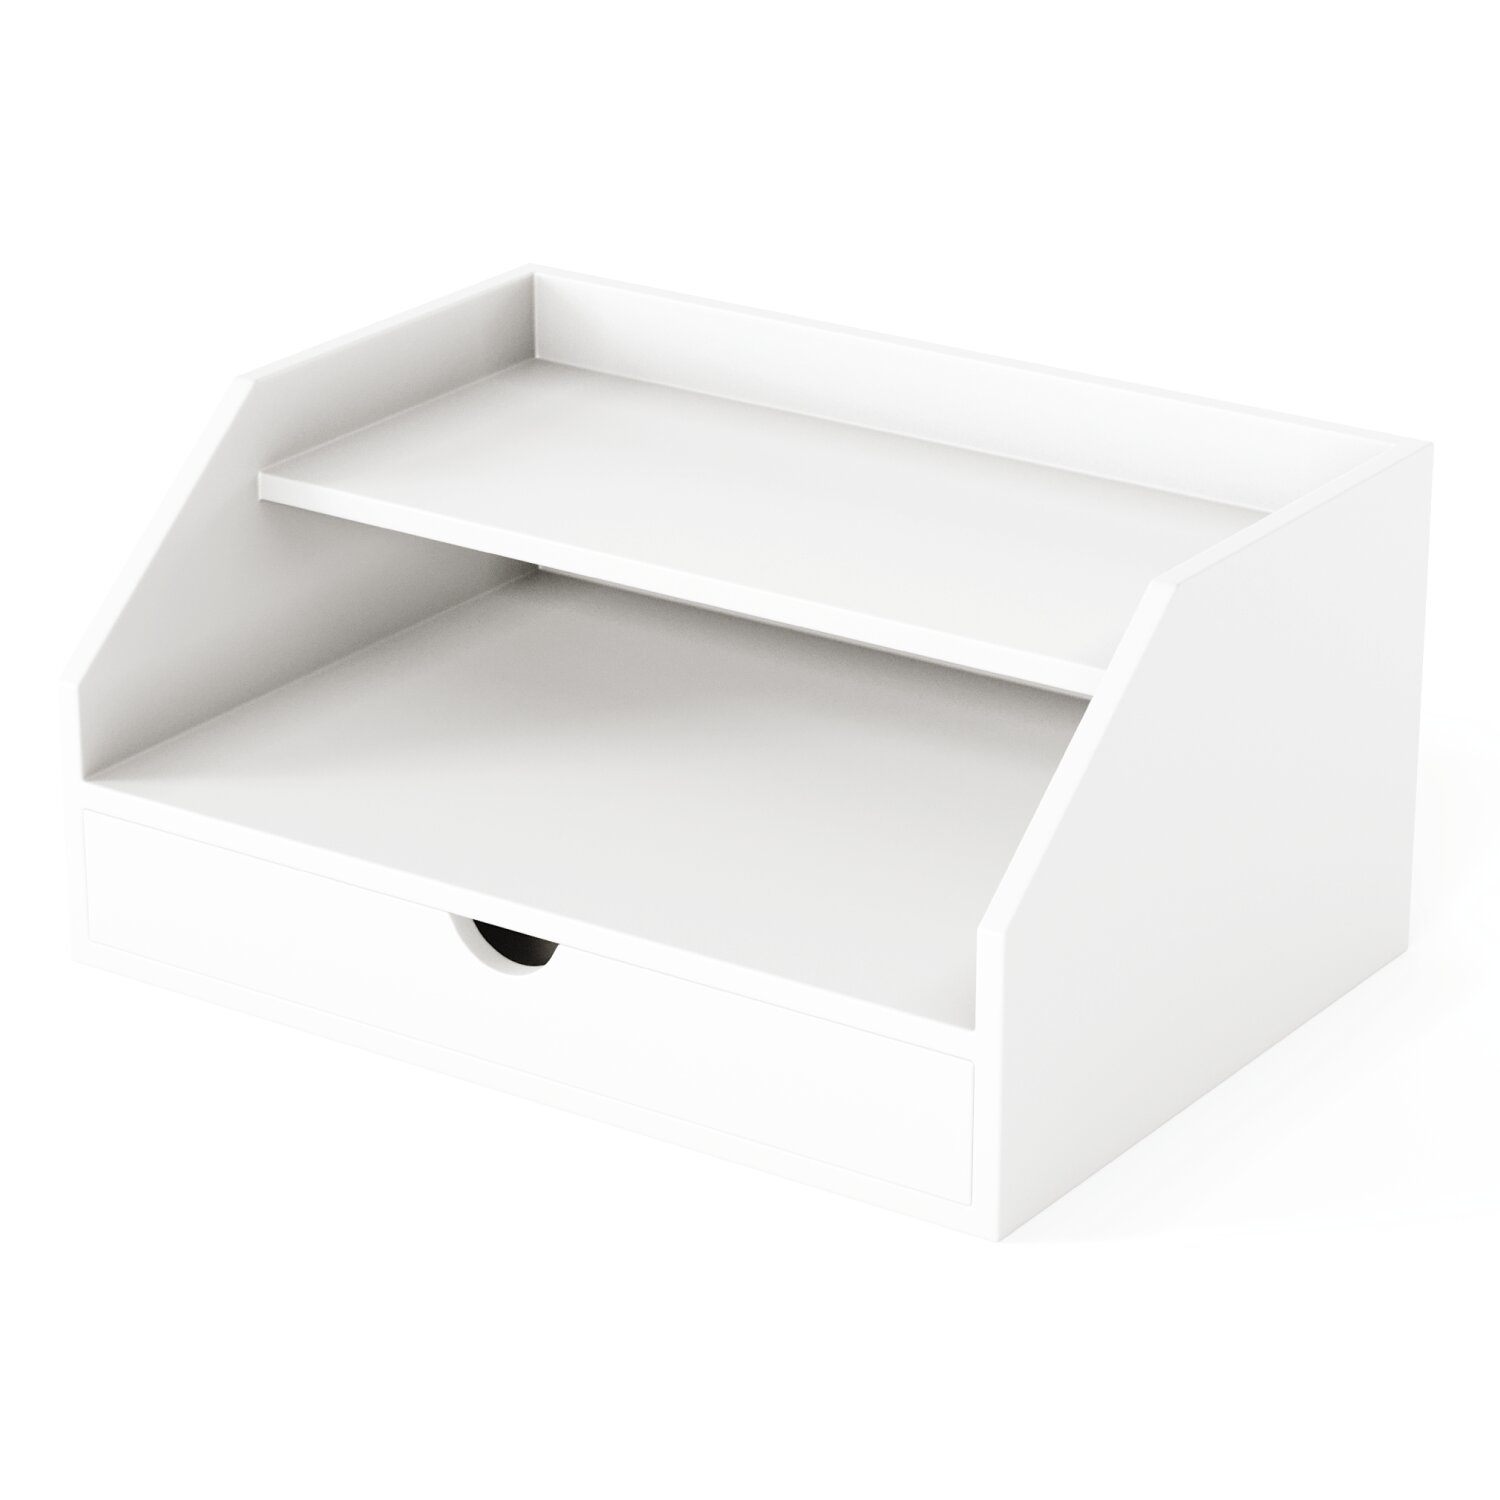 2 Tier Desk Organizer with Drawer Ballucci Color: White